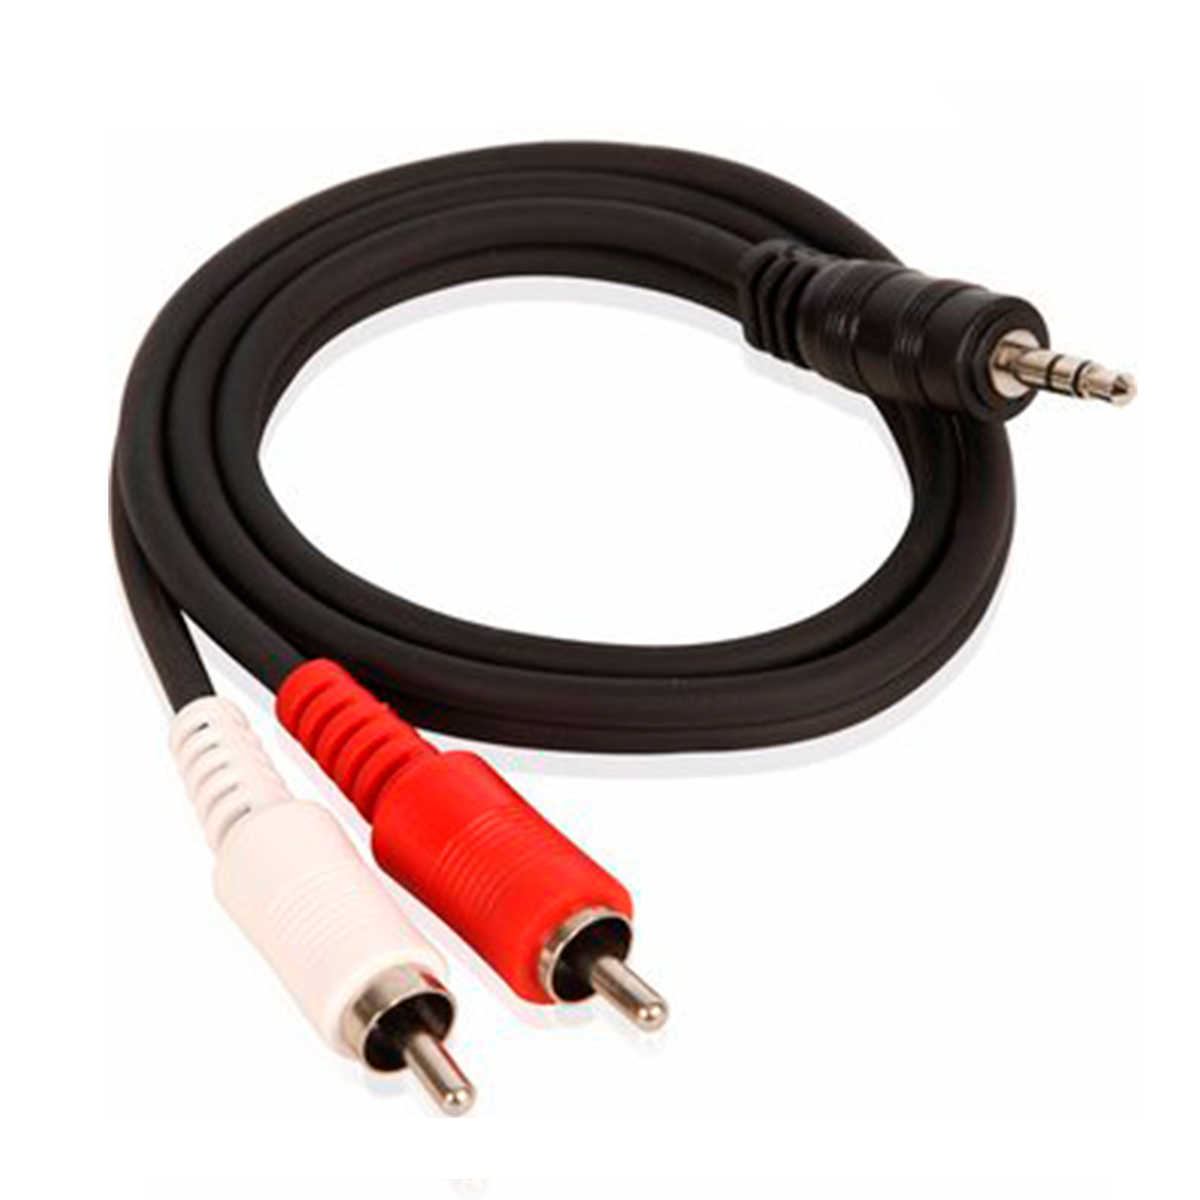 Cable de Sonido 2 a 1 - M y M Suministros